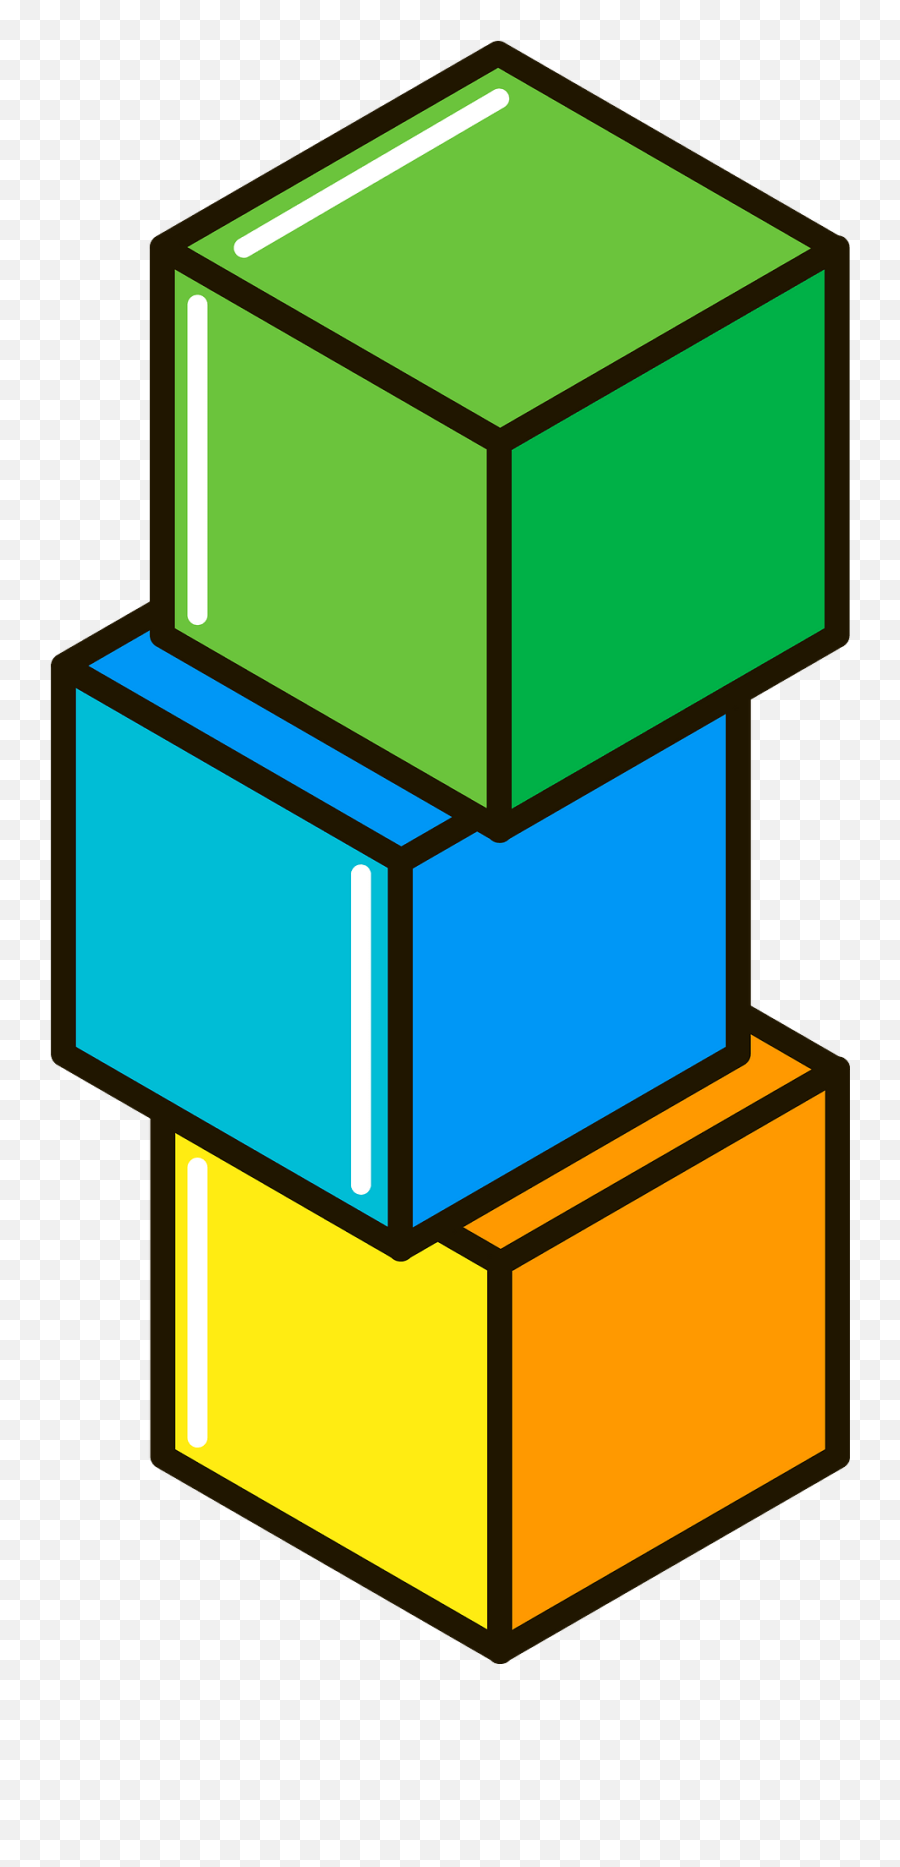 Building Blocks Clipart Free Download Transparent Png - Transparent Building Blocks Clipart Emoji,Blockland Emoticon